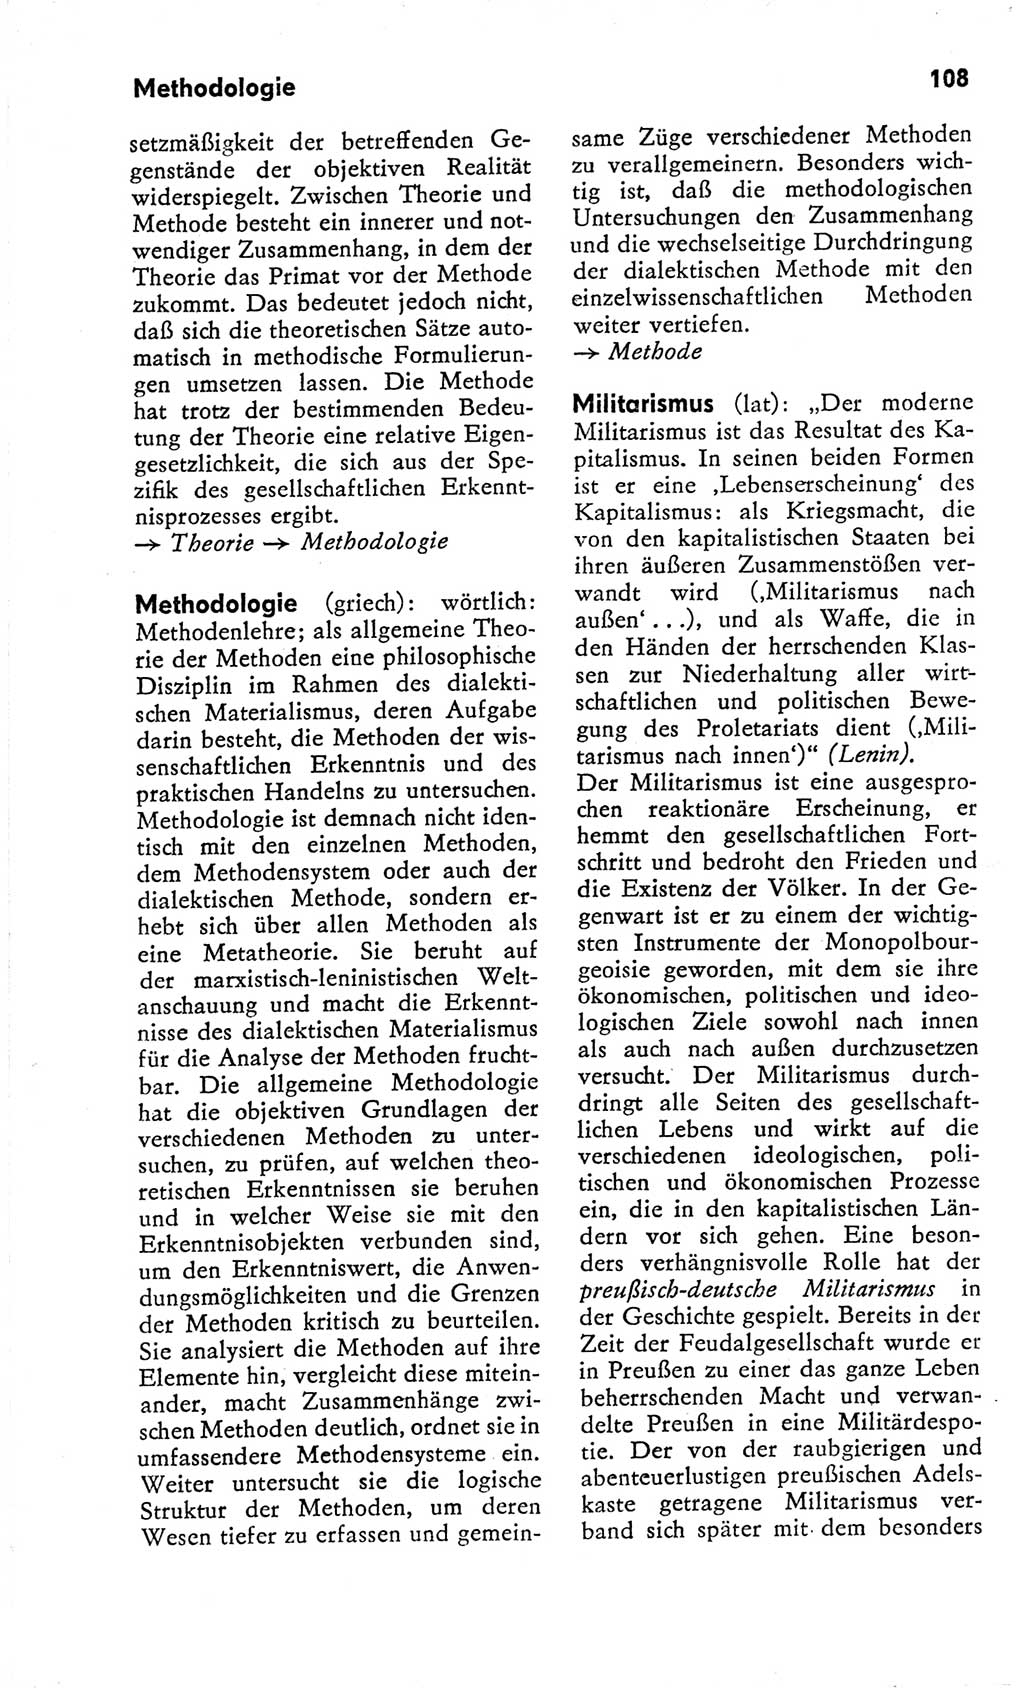 Kleines Wörterbuch der marxistisch-leninistischen Philosophie [Deutsche Demokratische Republik (DDR)] 1966, Seite 108 (Kl. Wb. ML Phil. DDR 1966, S. 108)